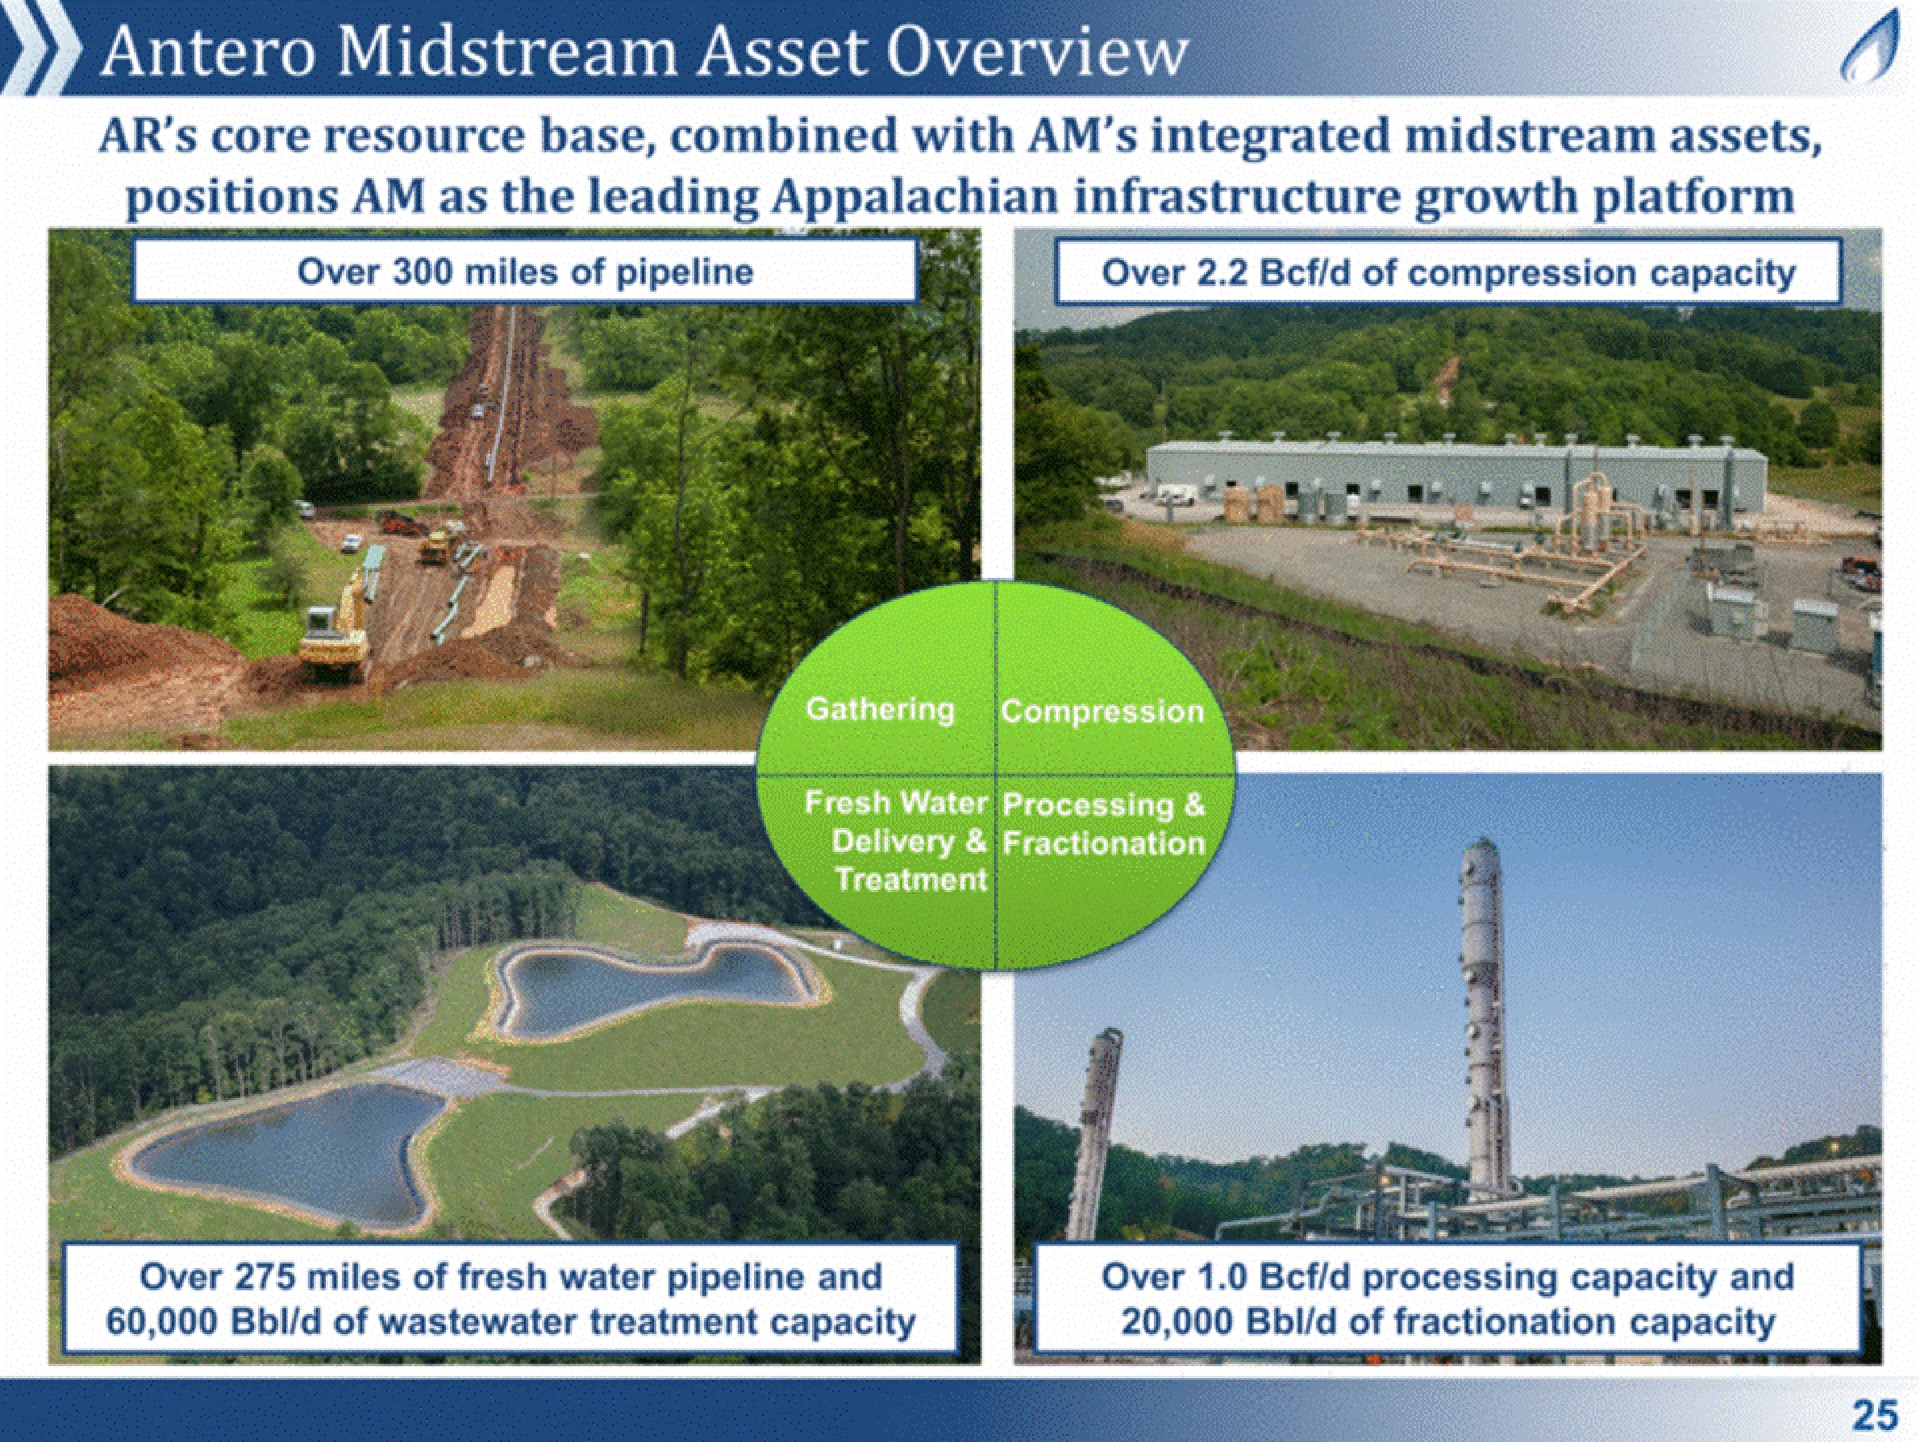 midstream asset overview | Antero Midstream Partners